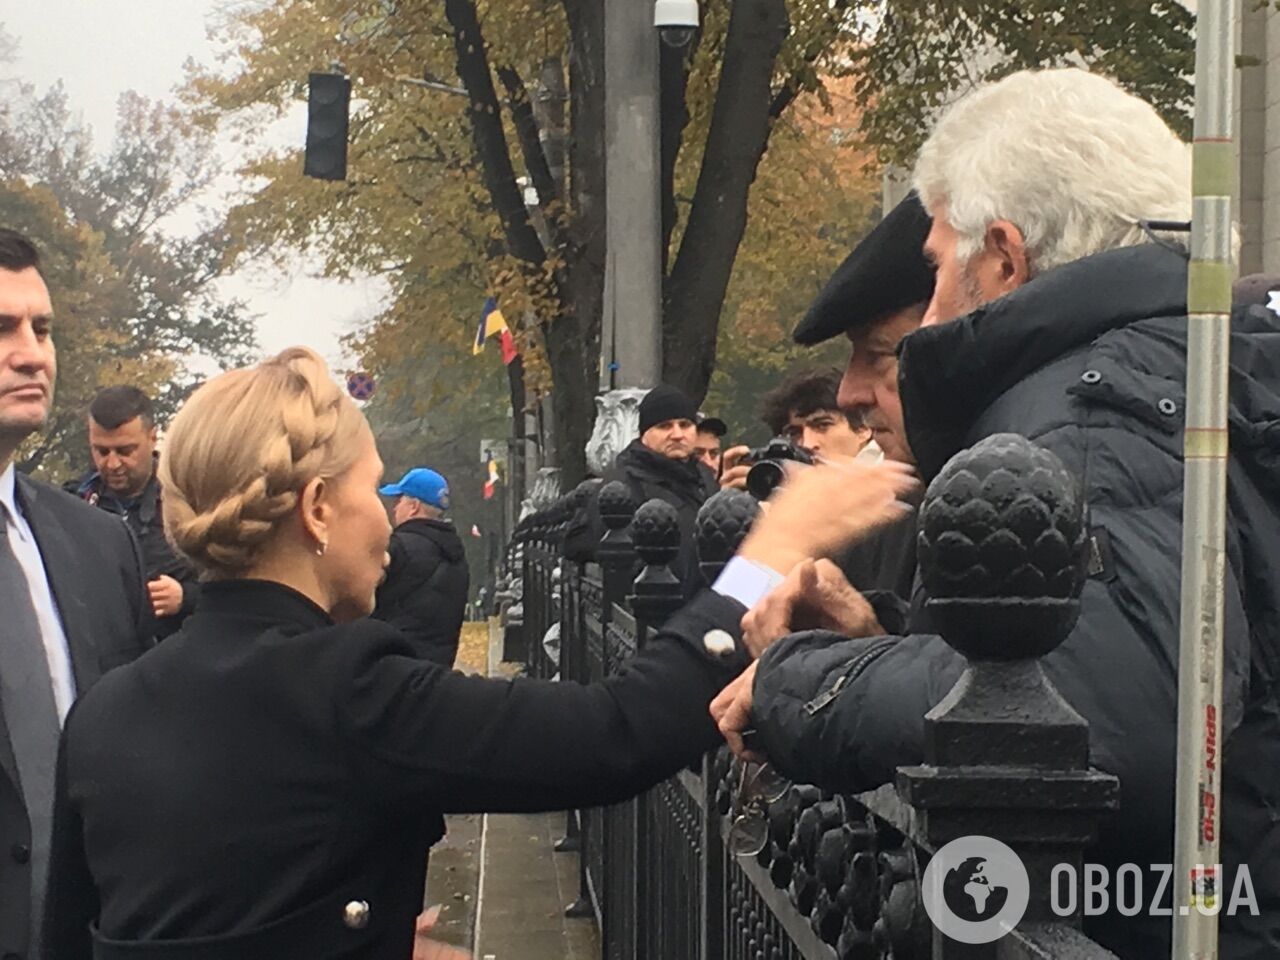 Митинг под Верховной Радой в Киеве: яркий фоторепортаж